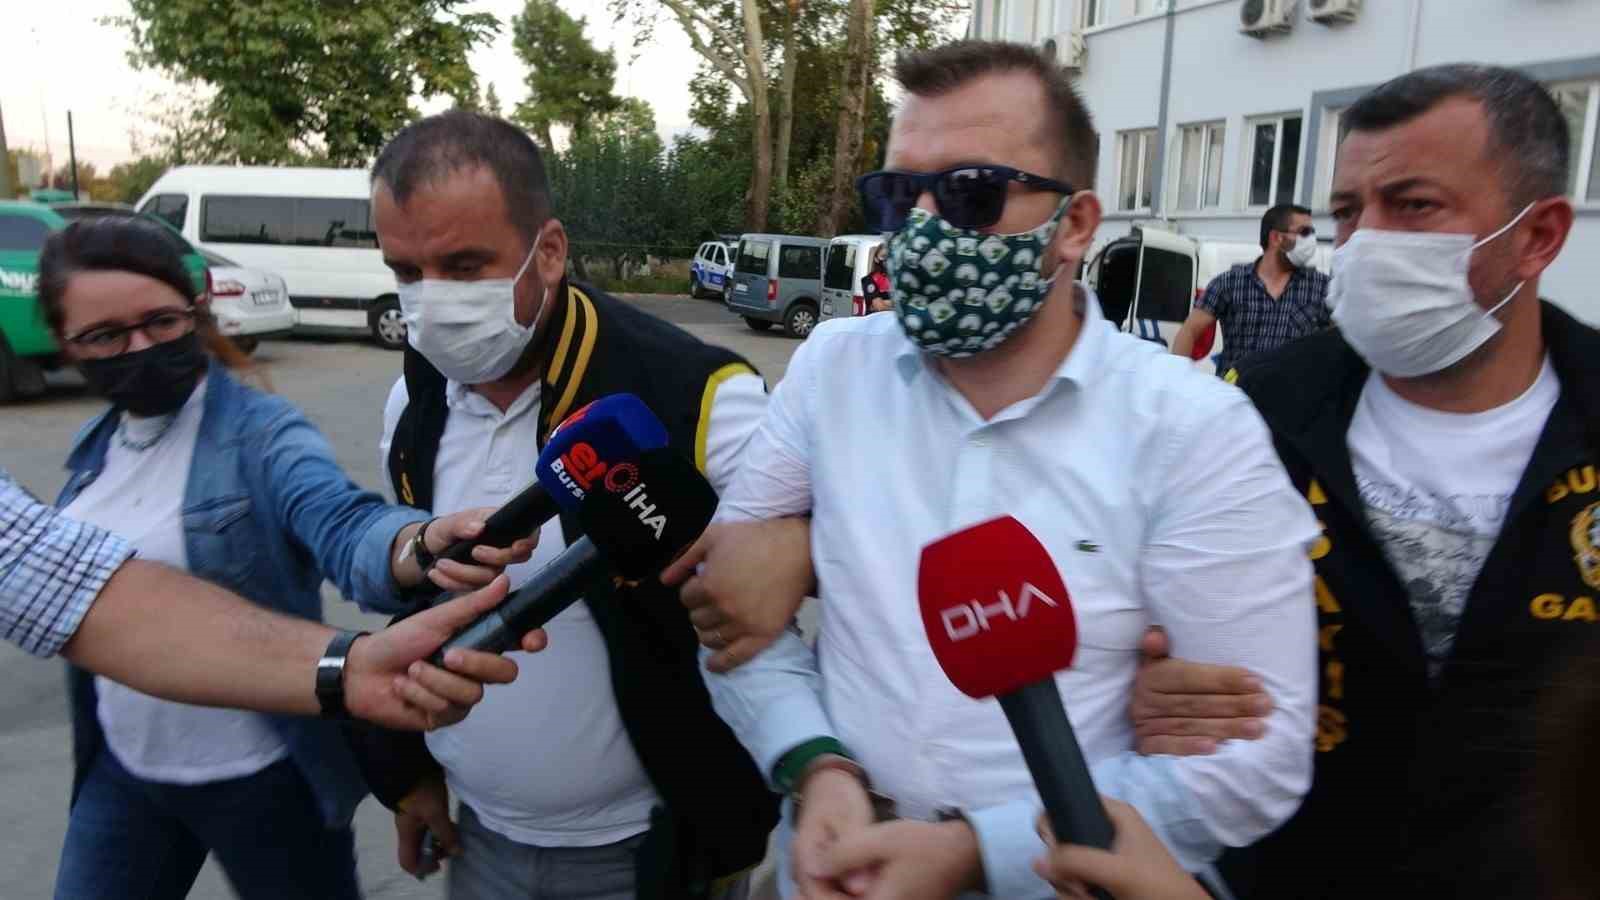 Silah ve mermi gösterip şantajla para aldığı iddia edilen gazeteciye 7 yıl 6 ay hapis cezası verildi